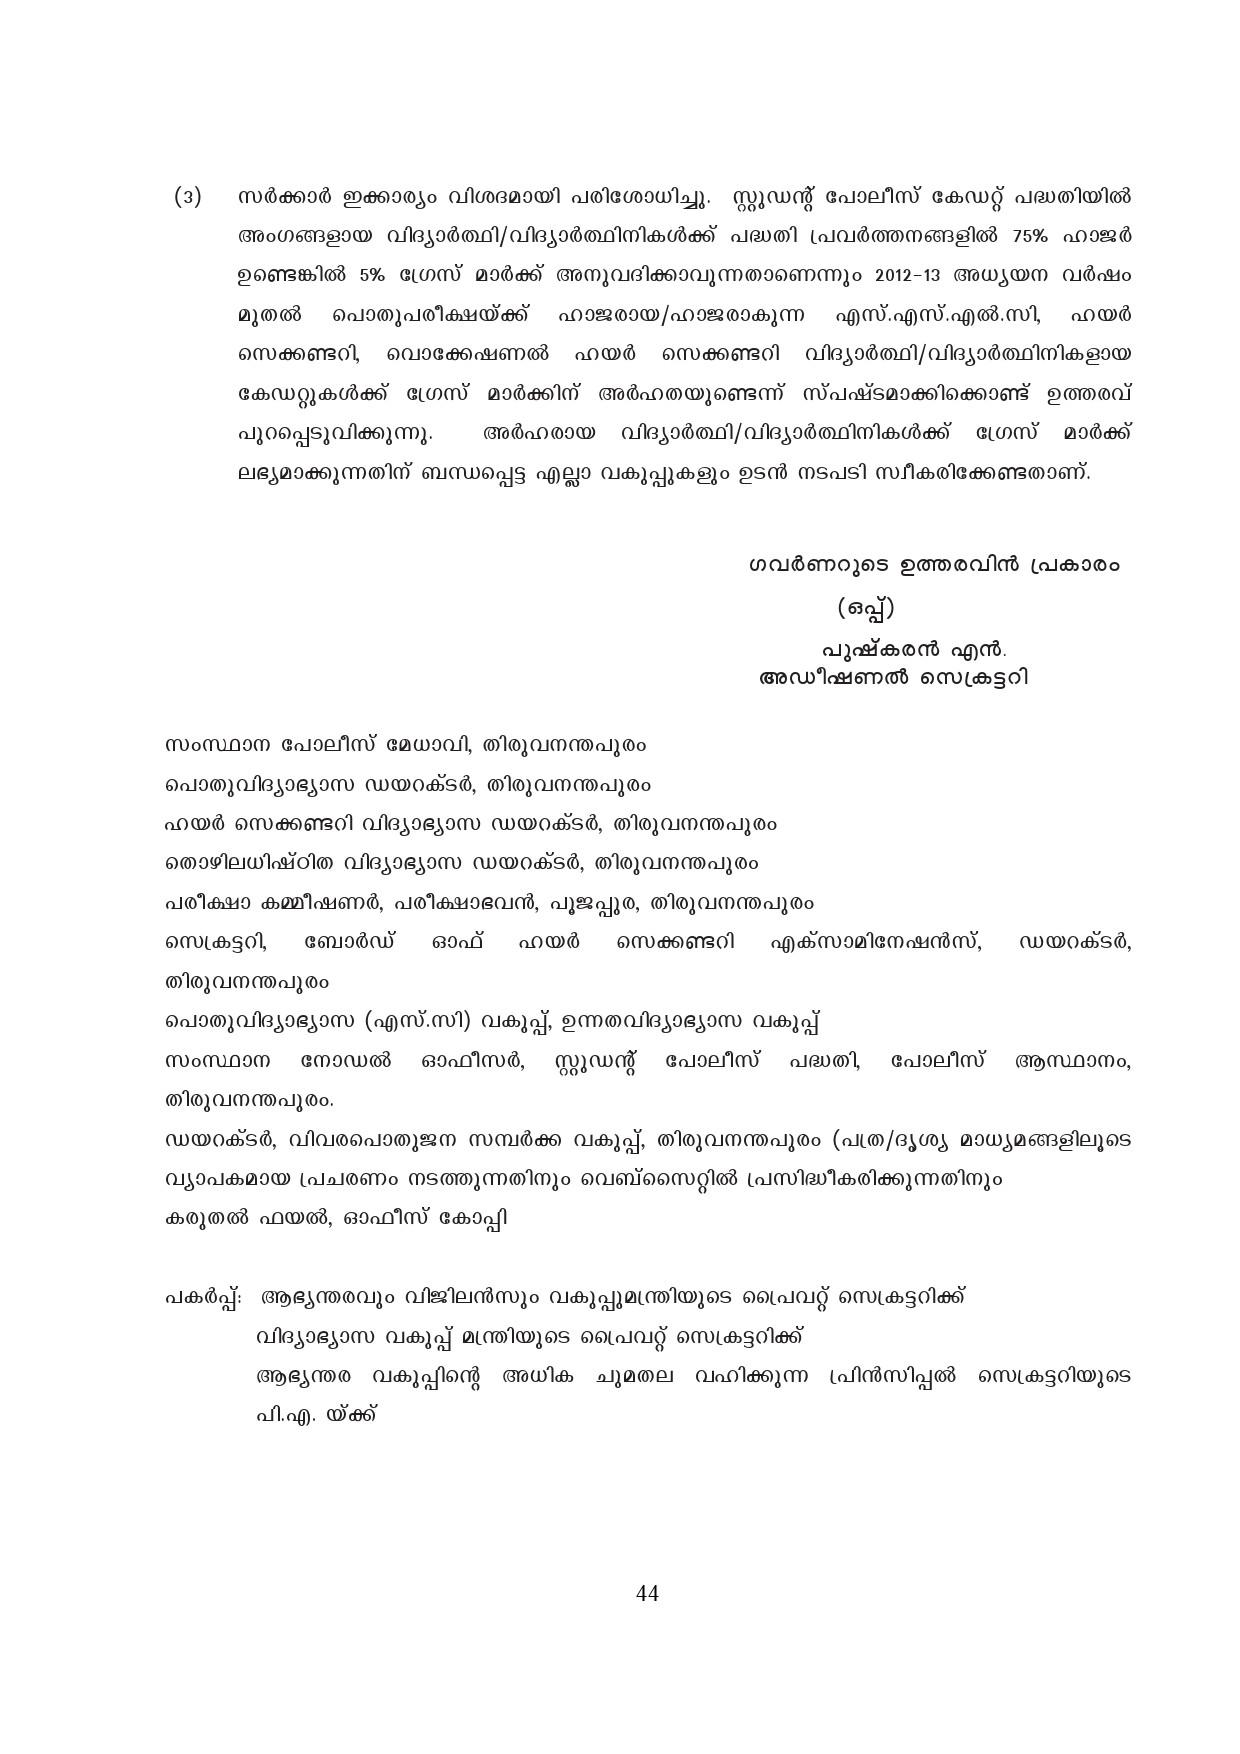 Kerala SSLC Exam Result 2019 - Notification Image 44